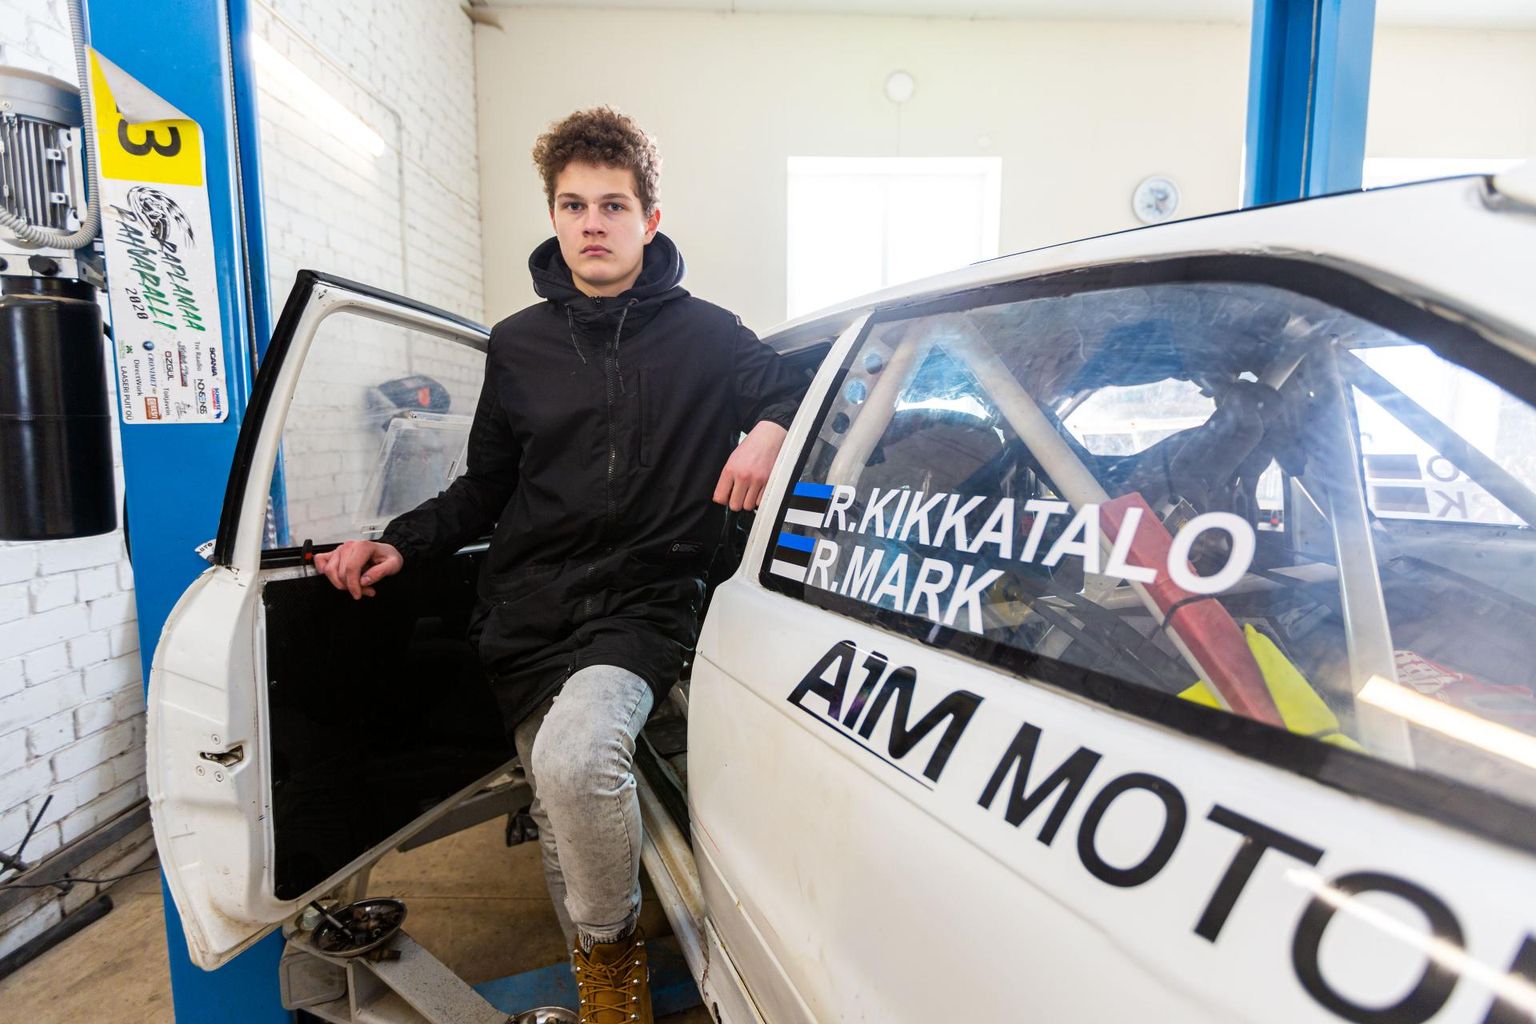 Kolm aastat tagasi oma esimese jäärajavõistluse teinud Robert Kikkatalo on sellest ajast peale järjest suurematel võistlustel käinud ja saanud istumise alla üha paremad autod. Nüüd roolib ta Opel Astrat. ​